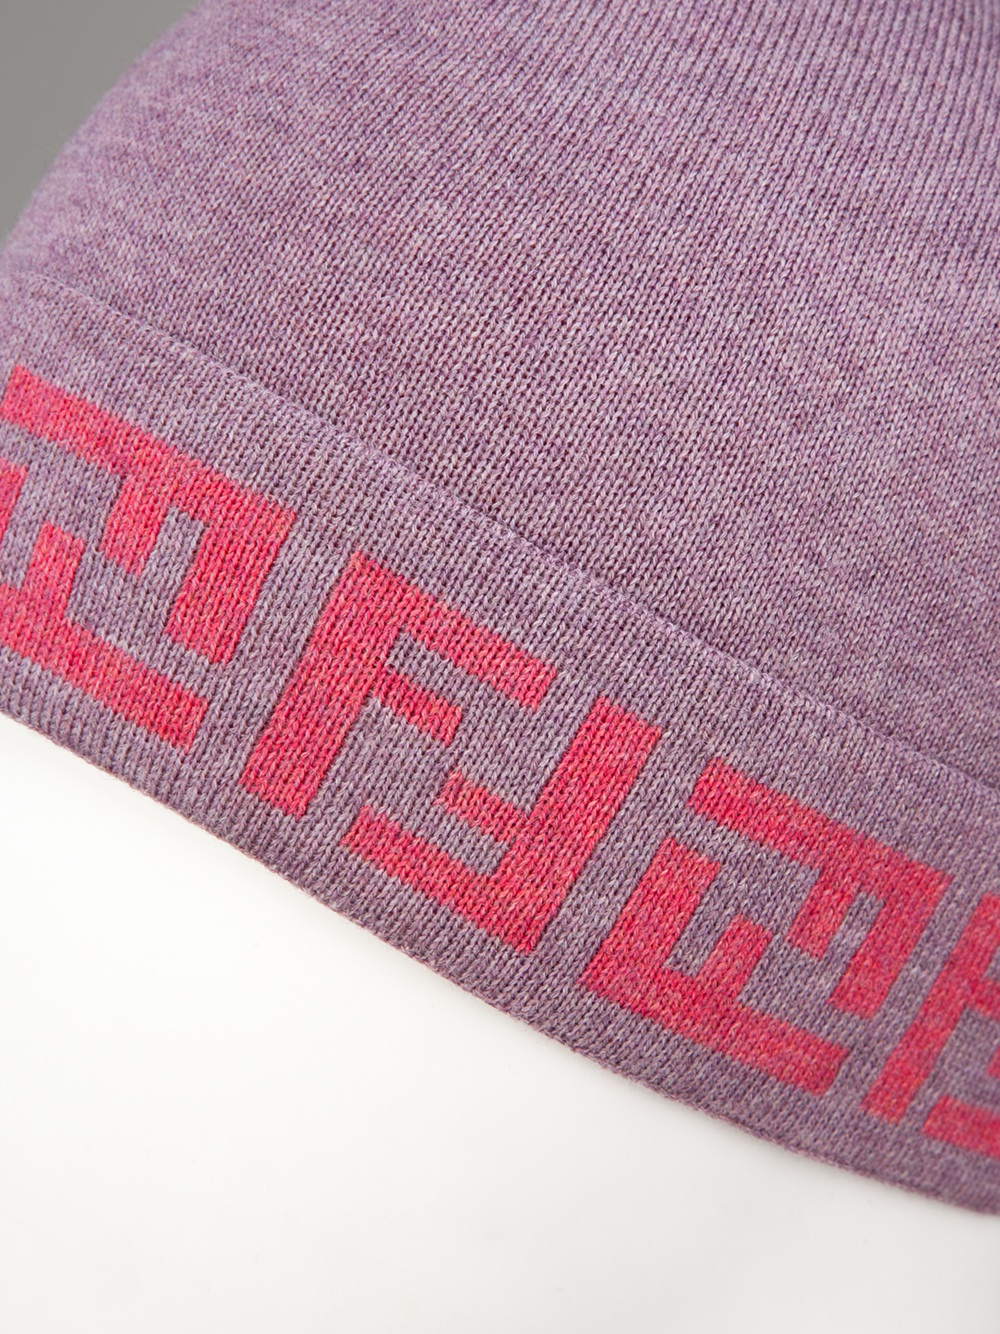 Fendi Logo Wooly Hat in Pink & Purple (Pink) - Lyst